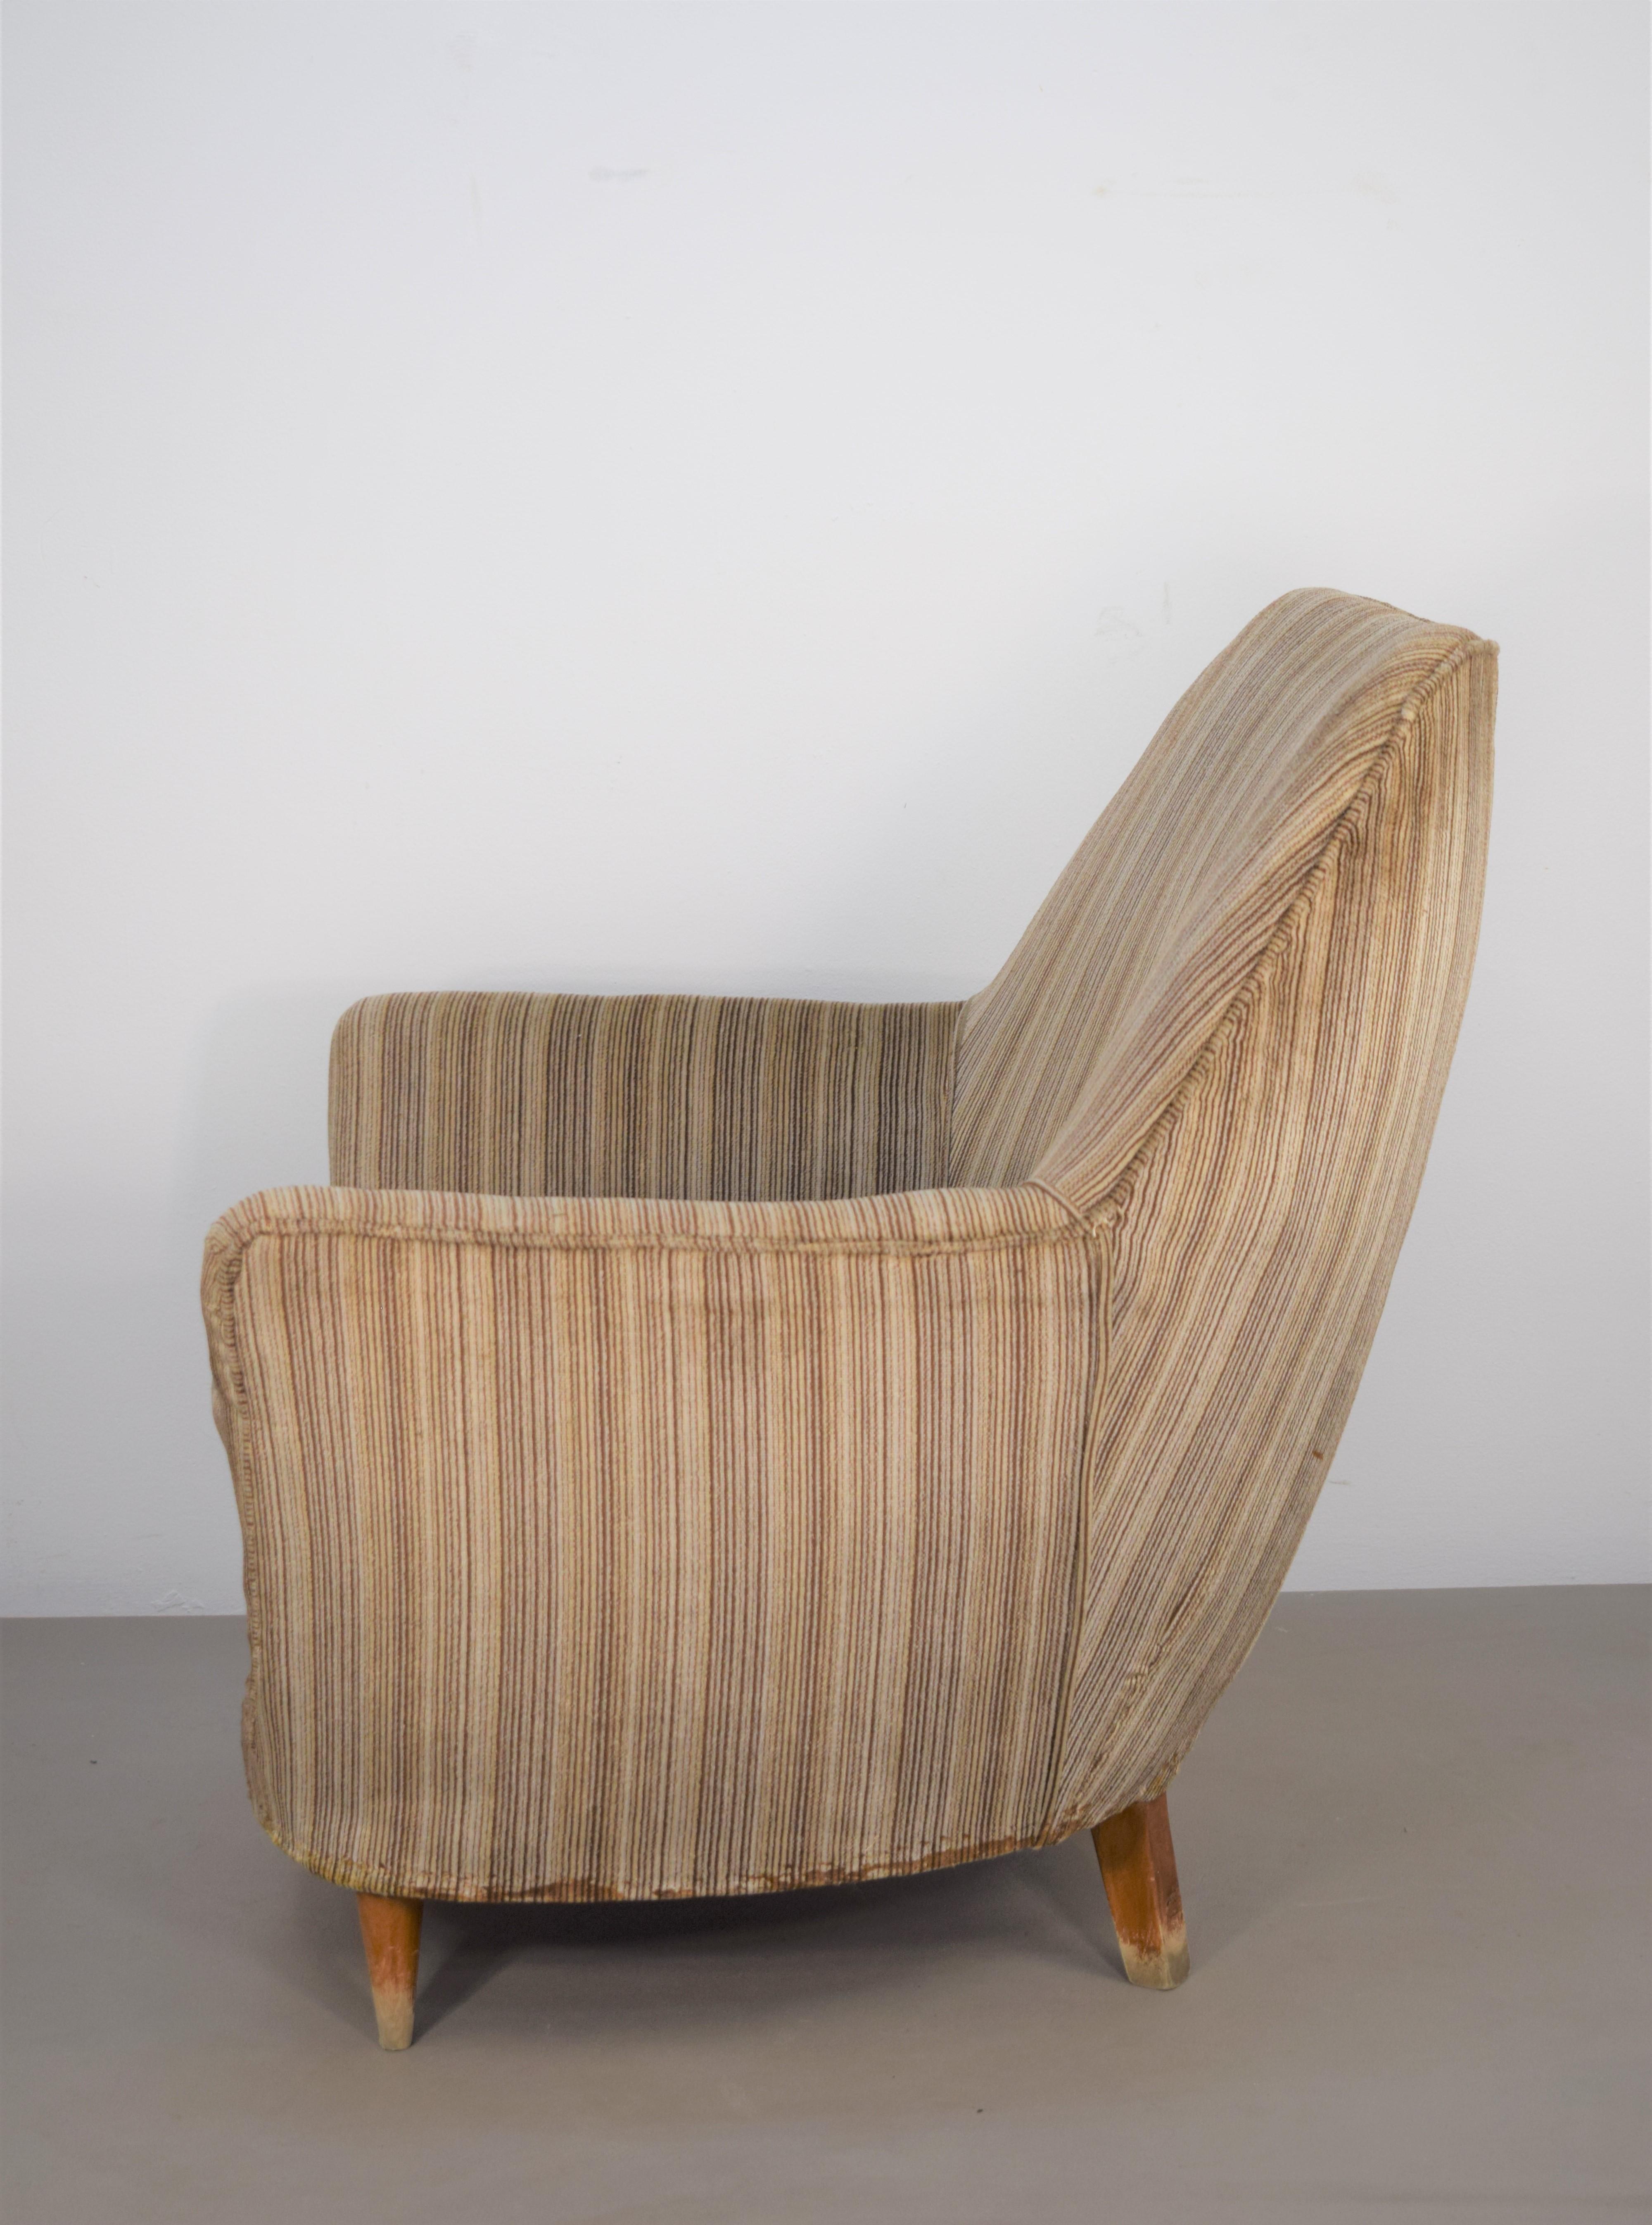 Italienischer Sessel, 1950er Jahre.
Abmessungen: H= 86 cm; B= 77 cm; T= 82 cm; H Sitz= 40 cm.